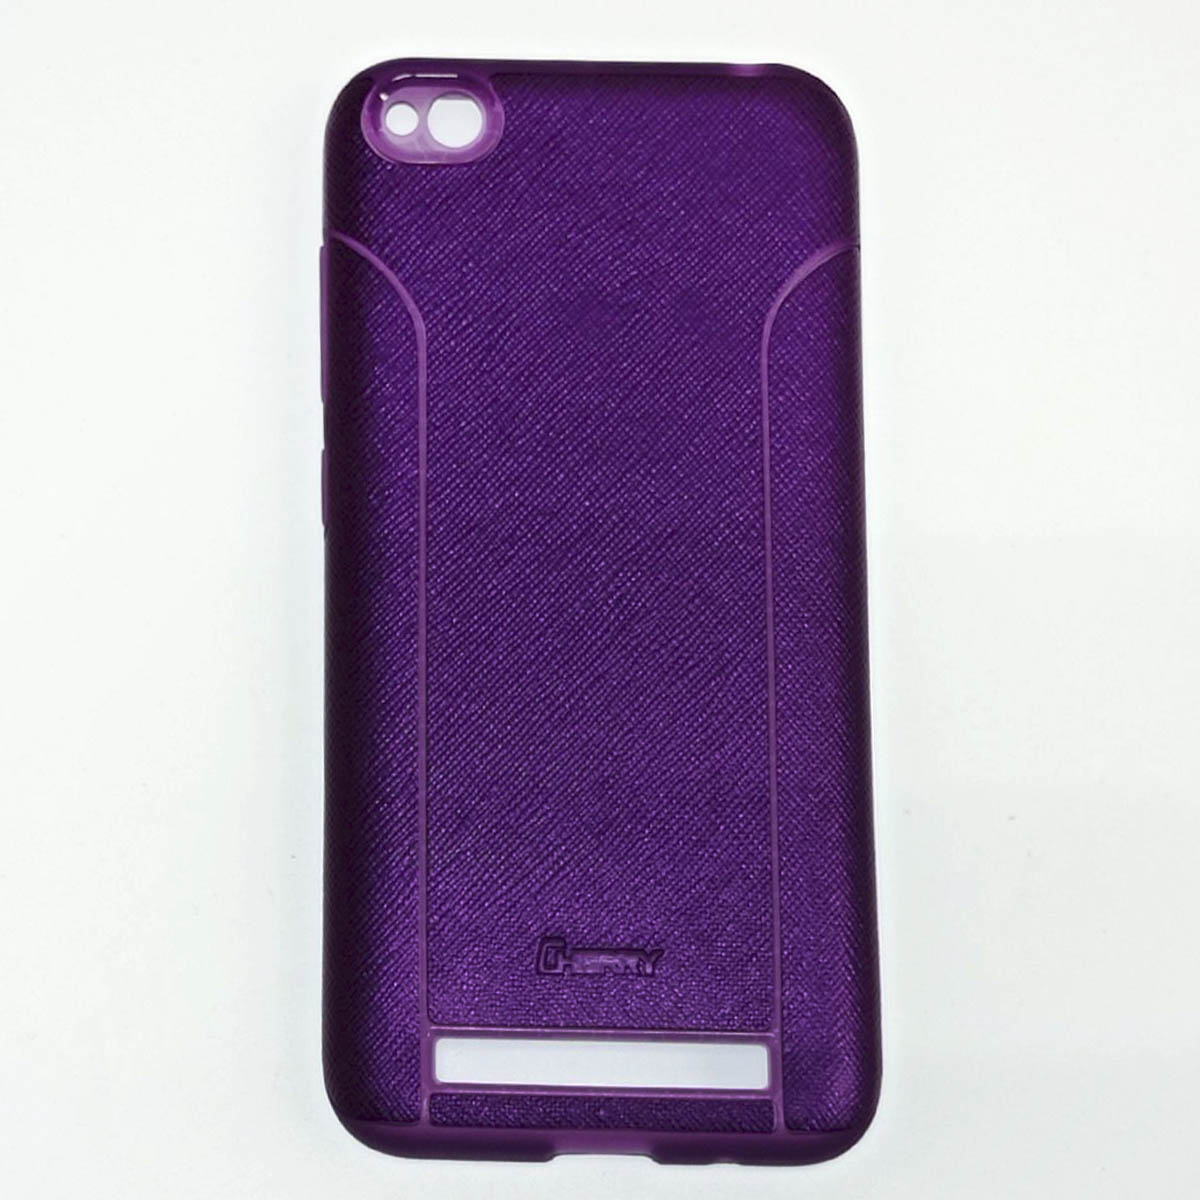 Чехол накладка для XIAOMI REDMI 5A, силикон, цвет фиолетовый.